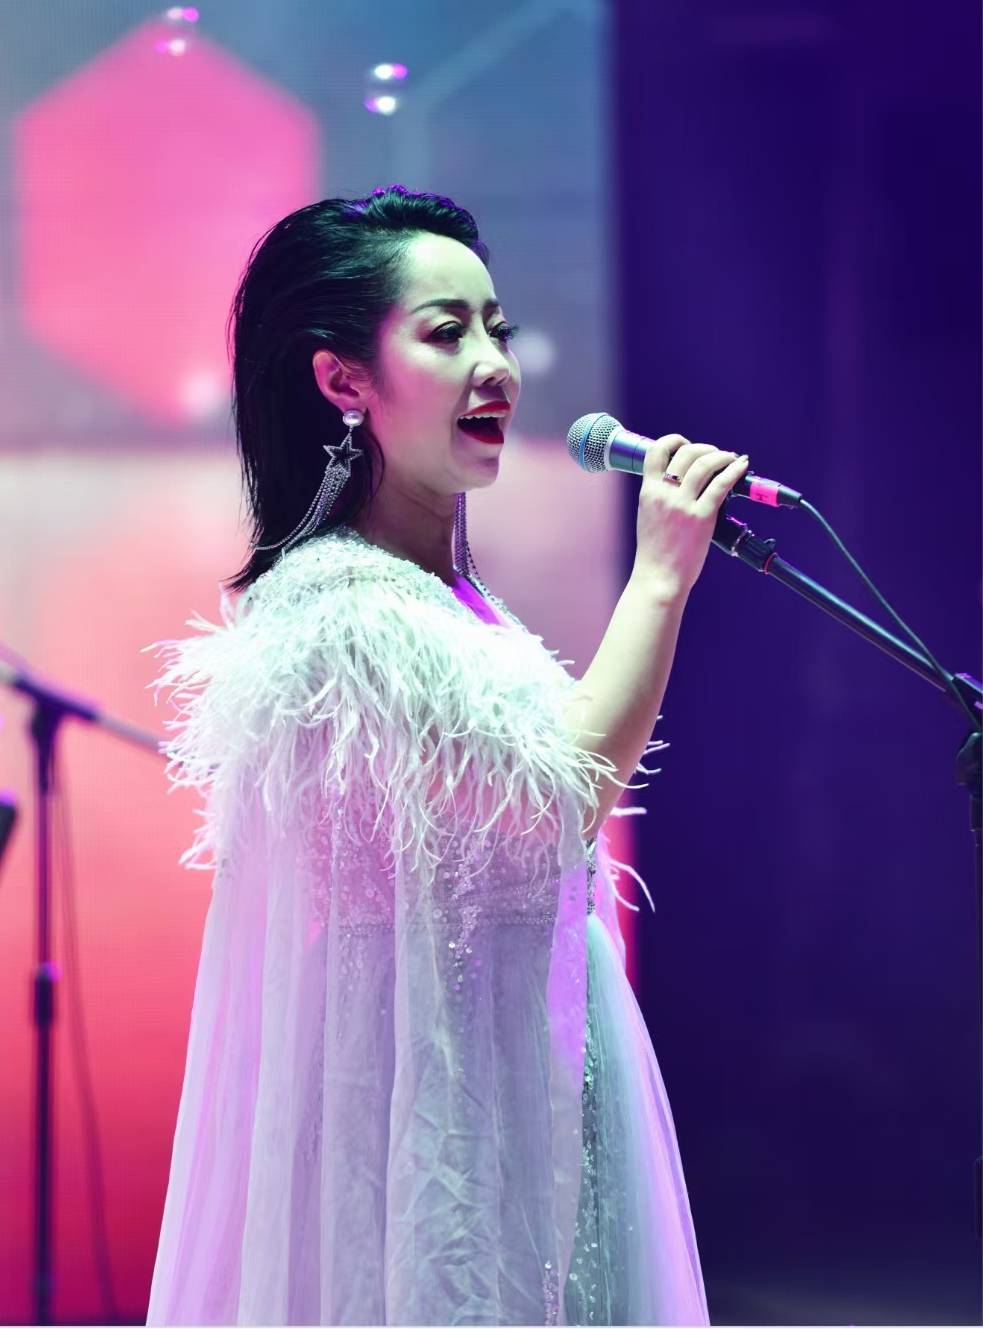 内蒙古歌手苏红图片